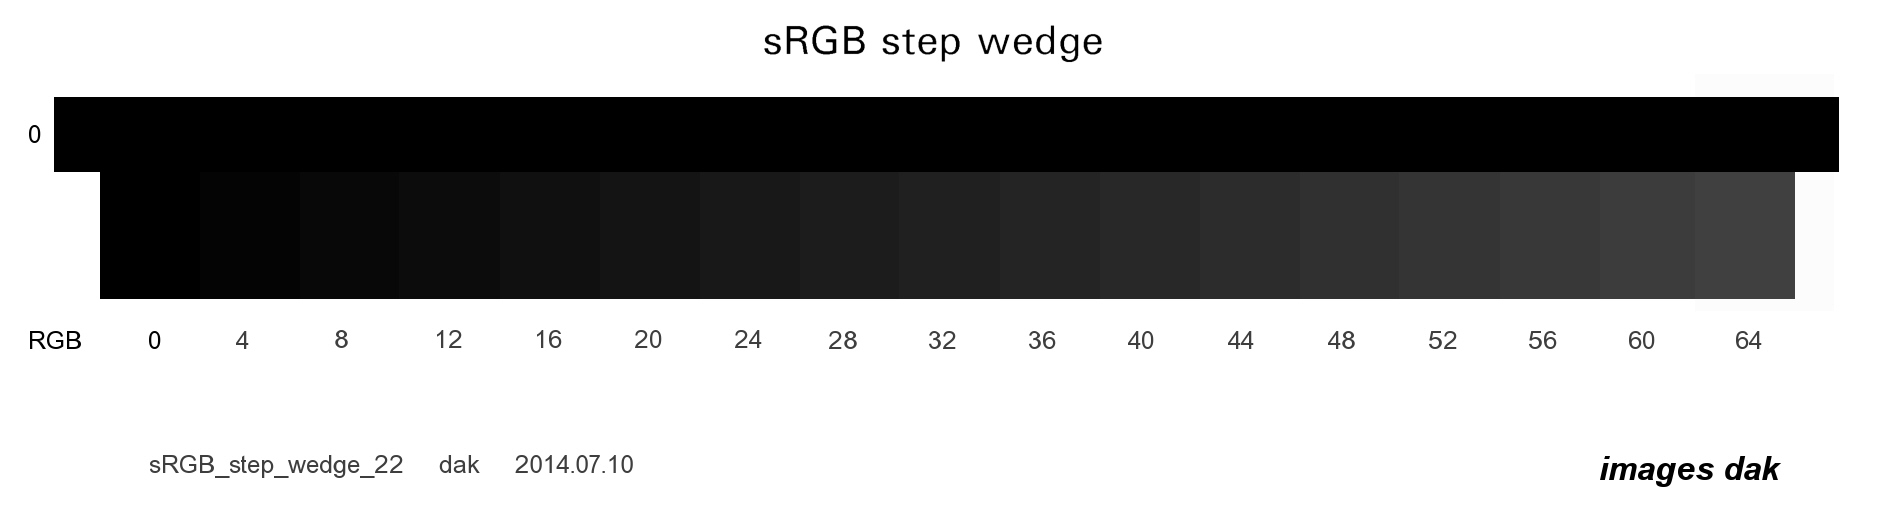 sRGB_step_wedge_22.jpg